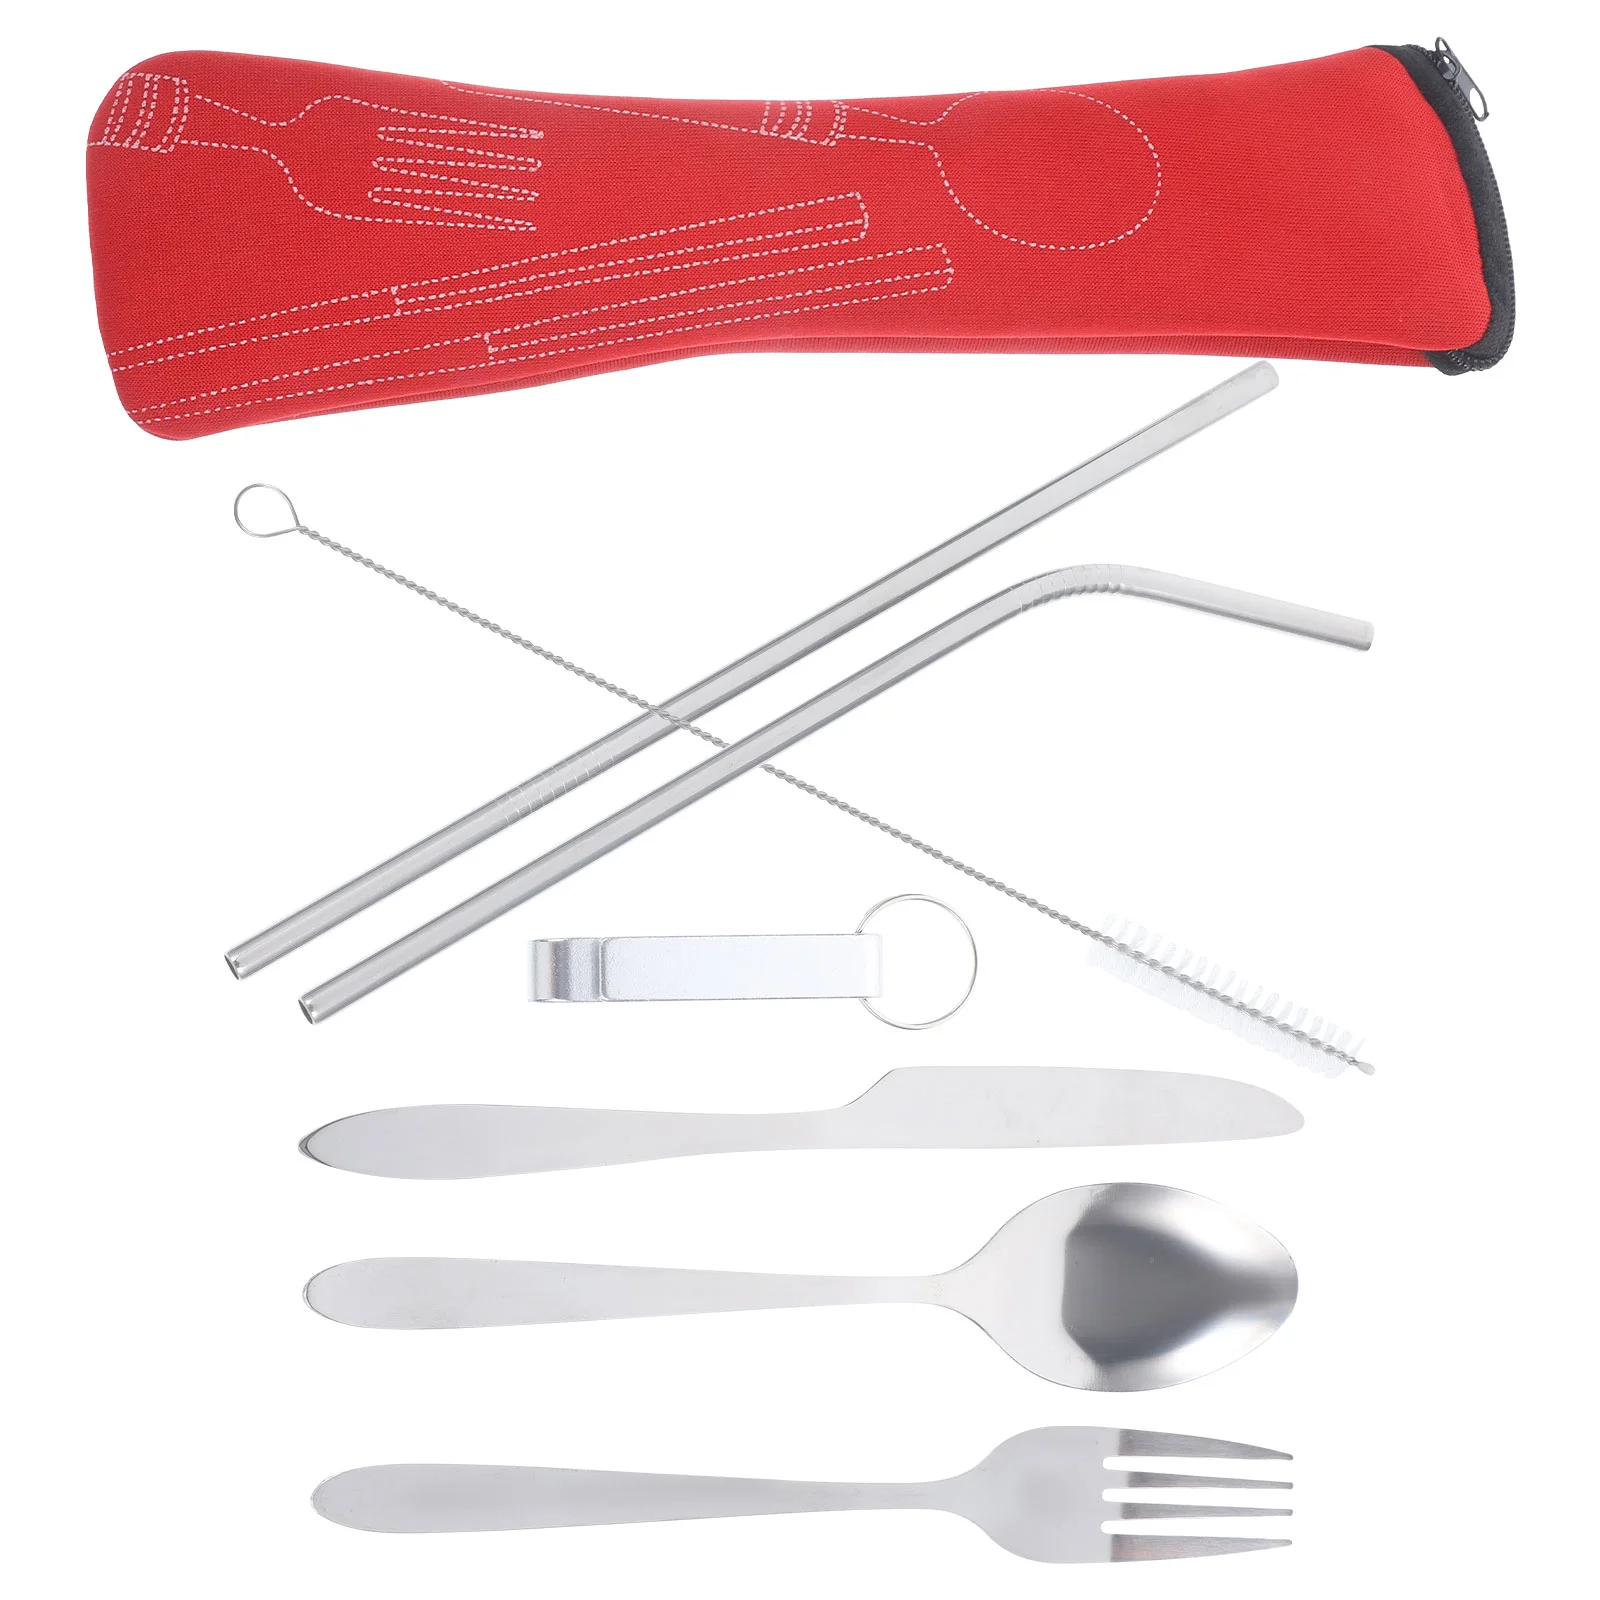 

Cutlery Spoon Set Food Flatware Forks Spoons Kit Stainless Steel Dinnerware Household